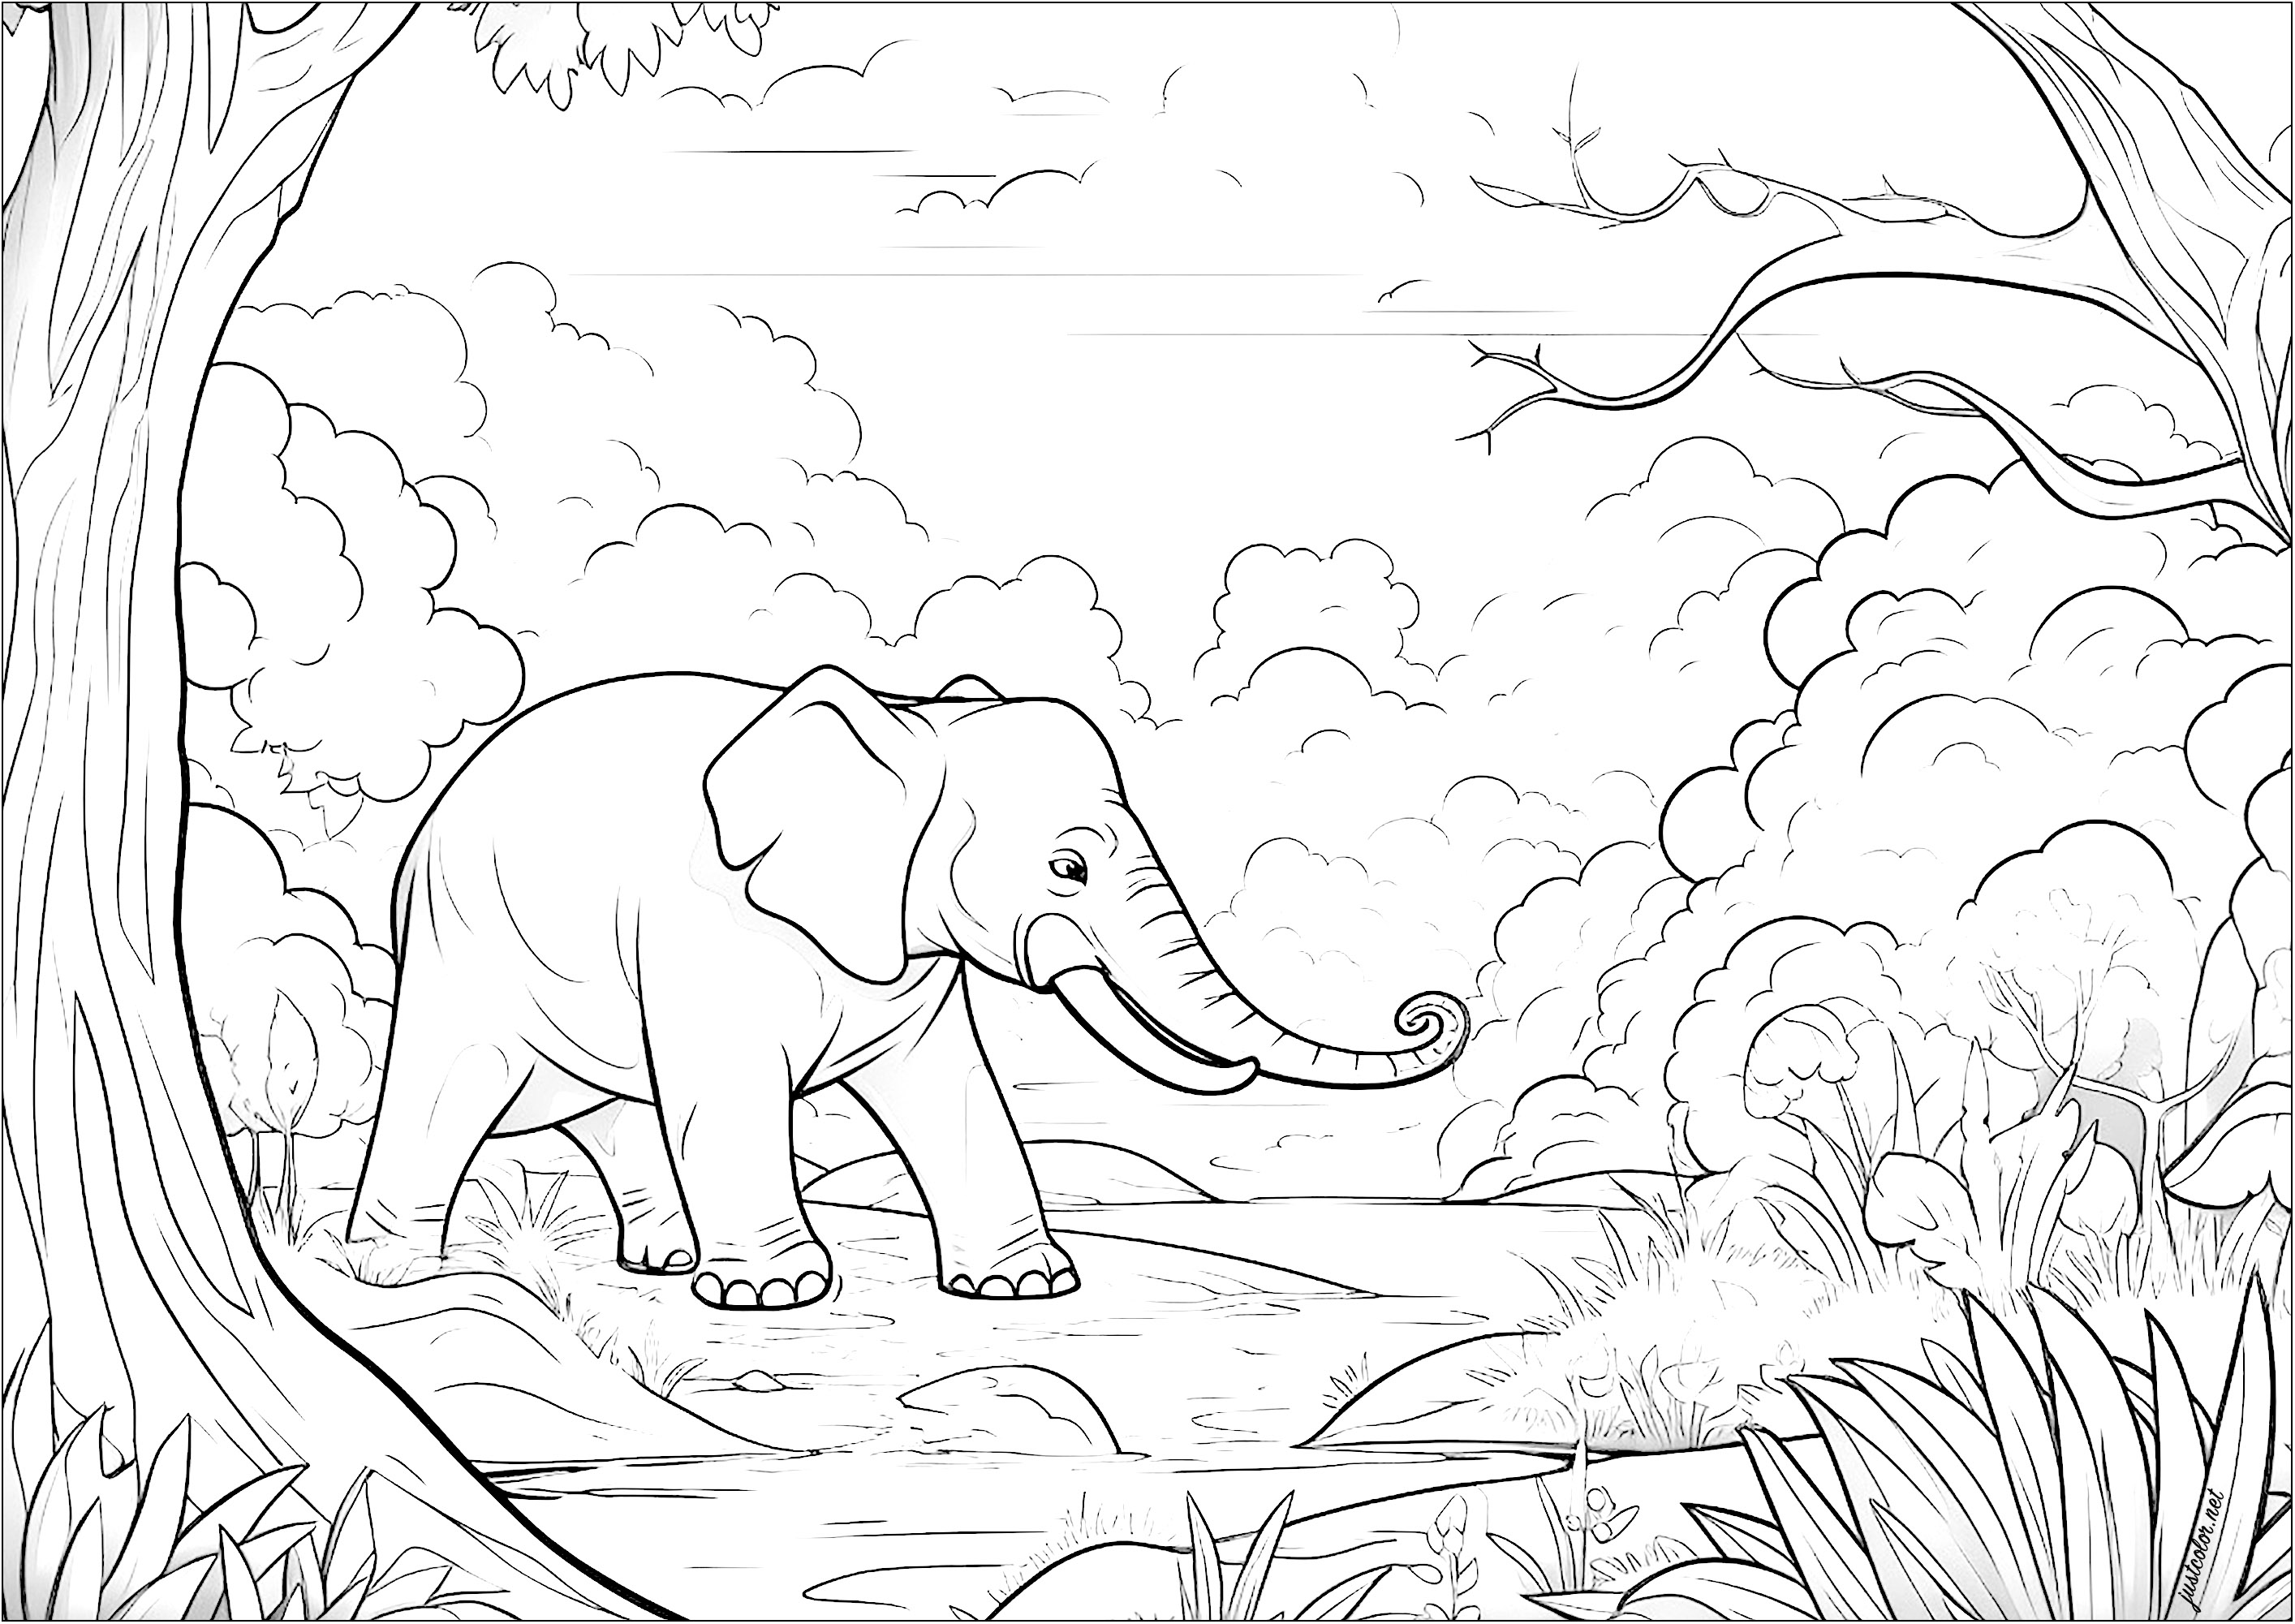 Carino l'elefantino che cammina nella Savana